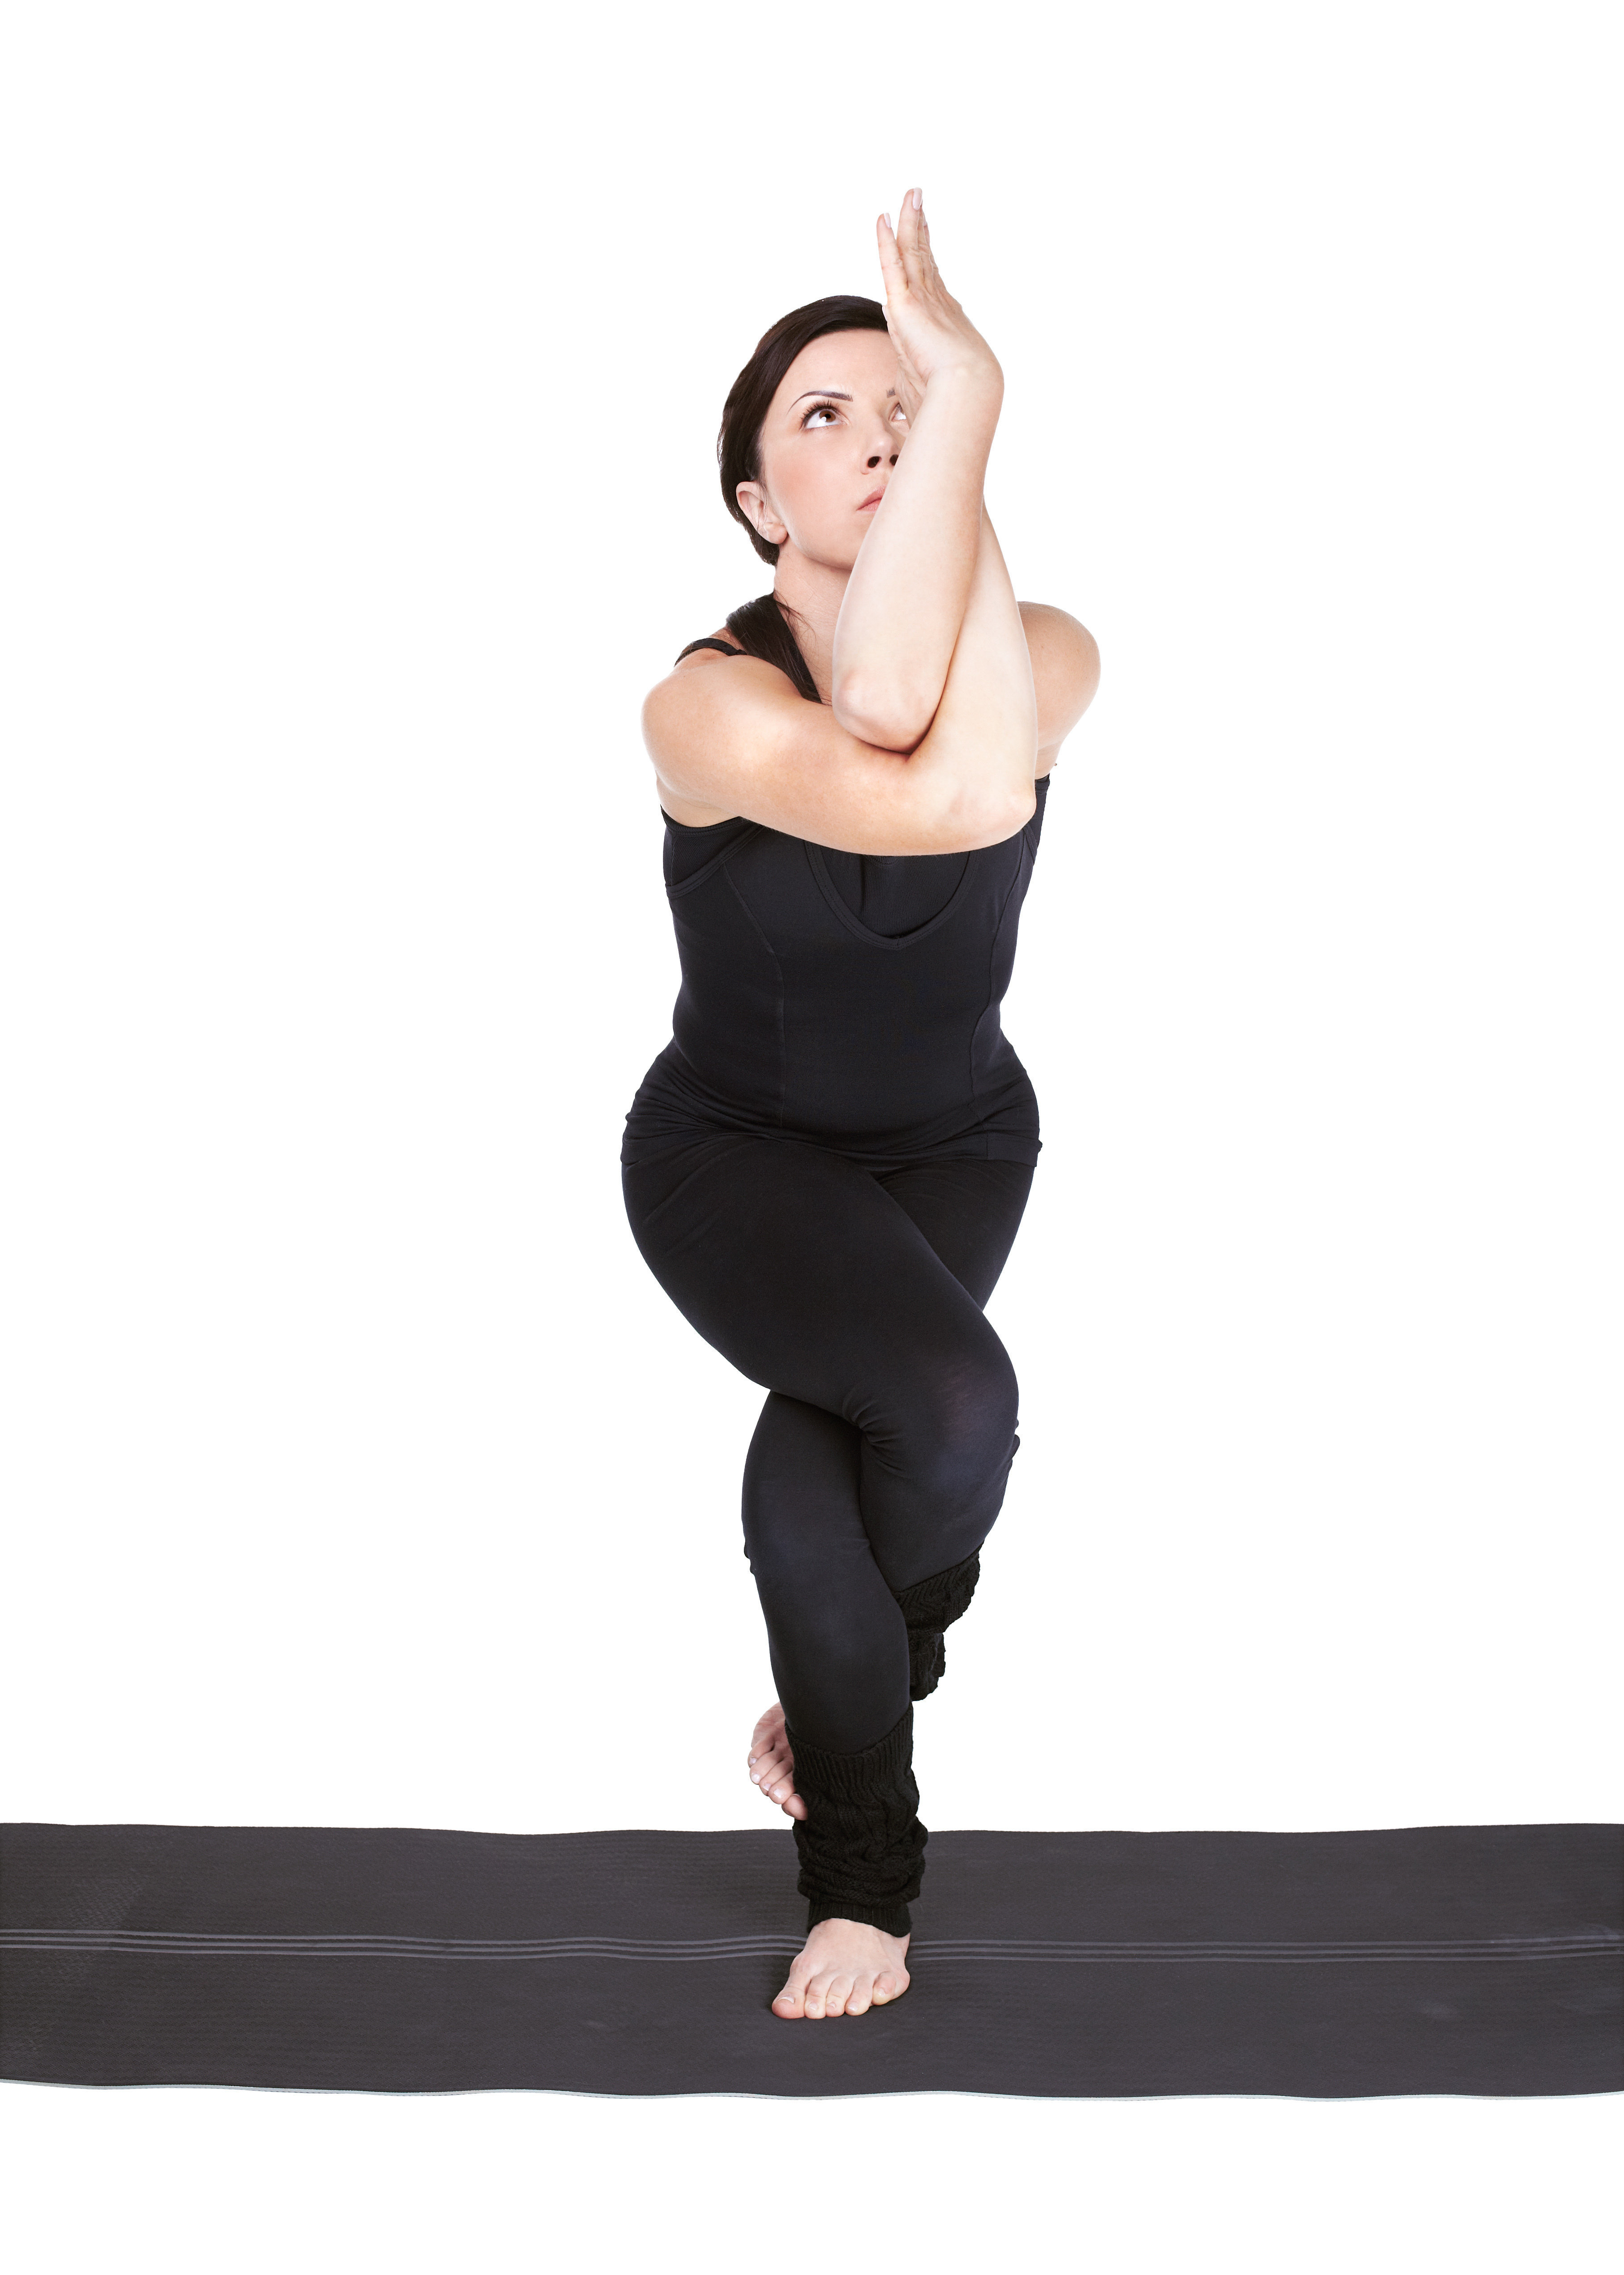 Yoga for Hormonal Imbalance: 10 Yoga Poses That Works!